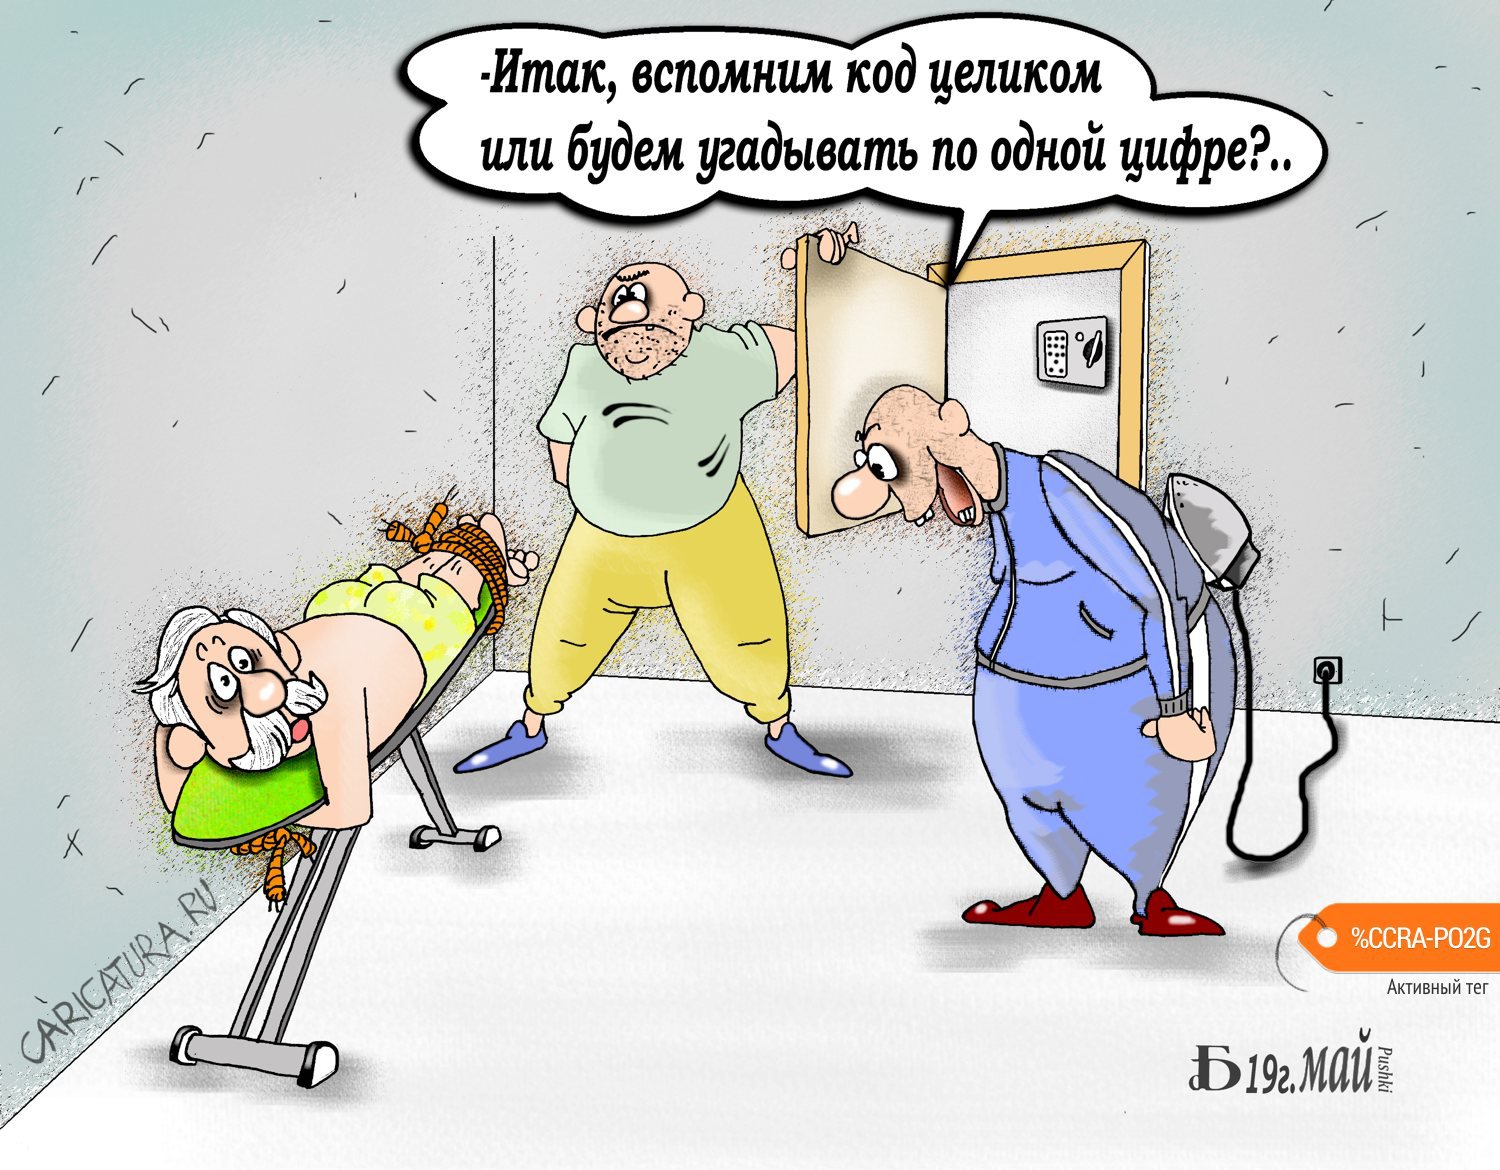 Карикатура "Про капитал-шоу", Борис Демин